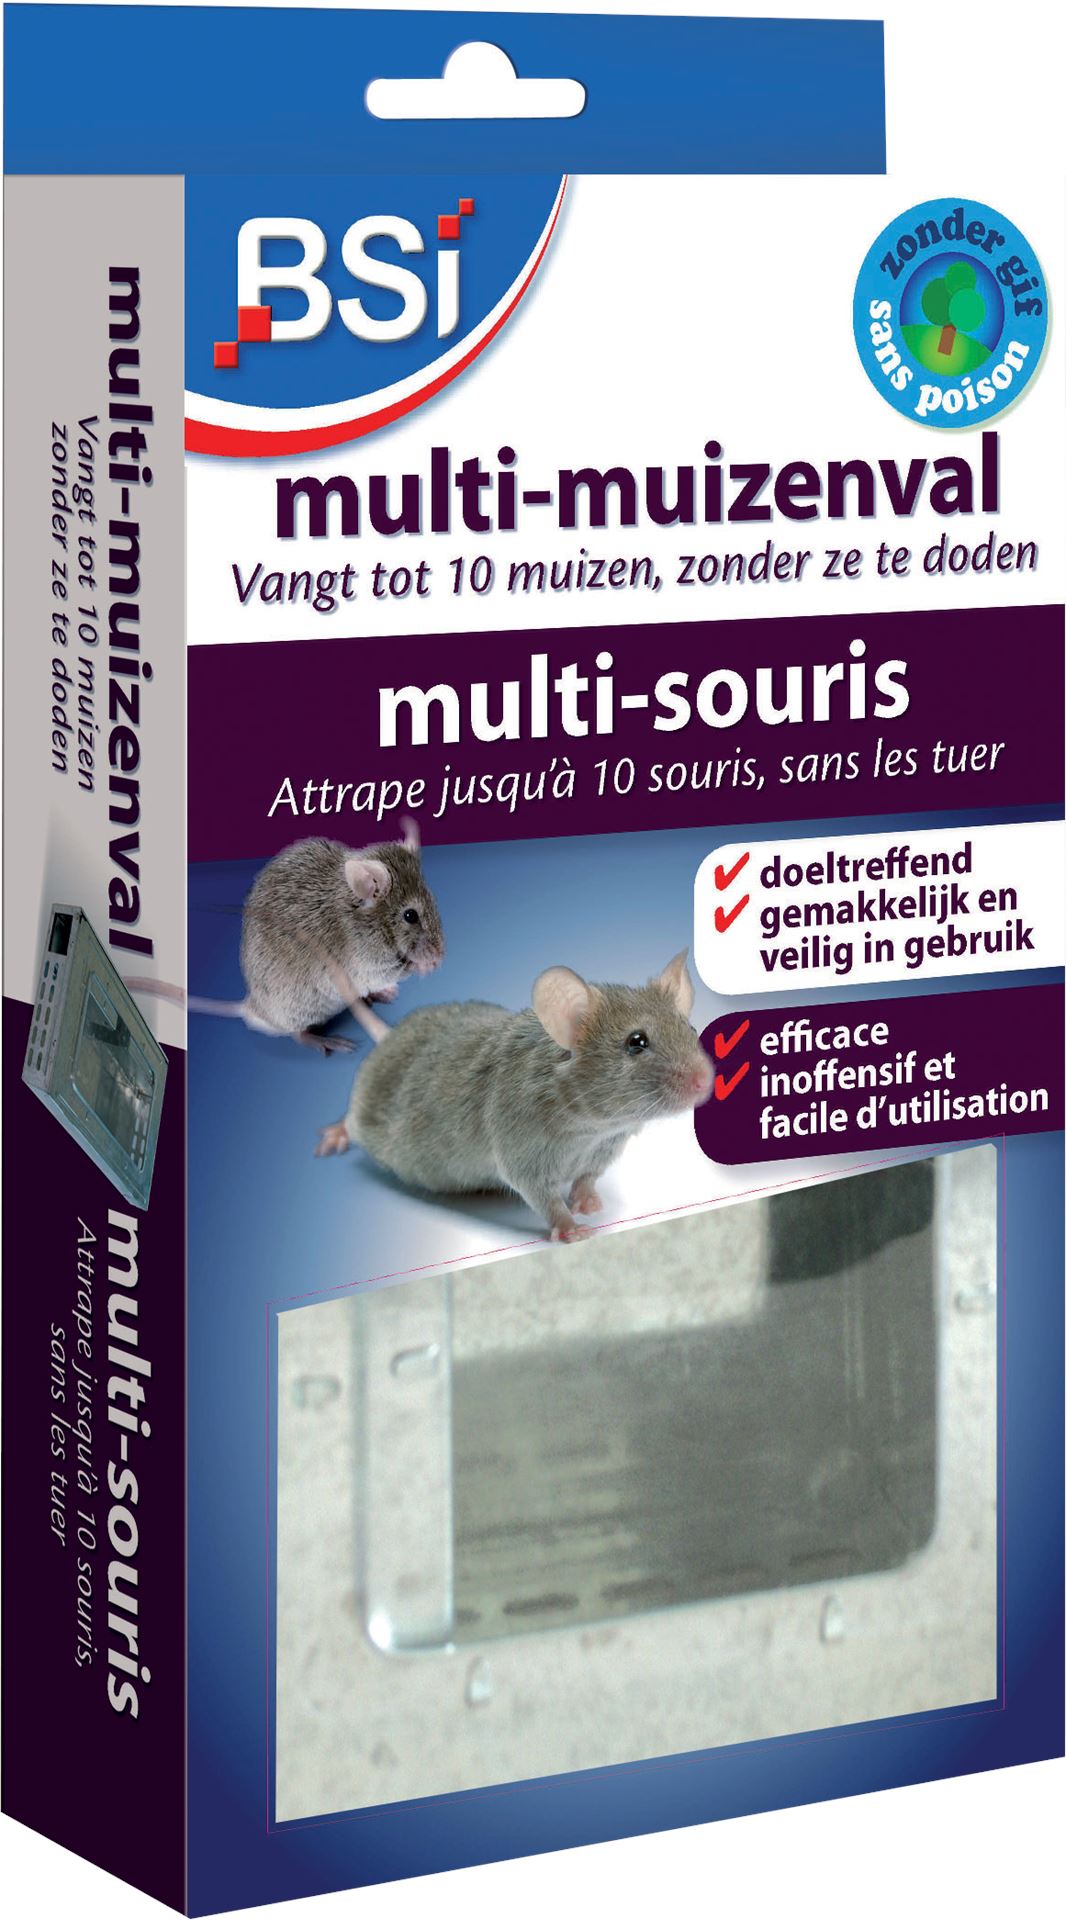 Multi-muizenval-om-de-muizen-levend-te-vangen